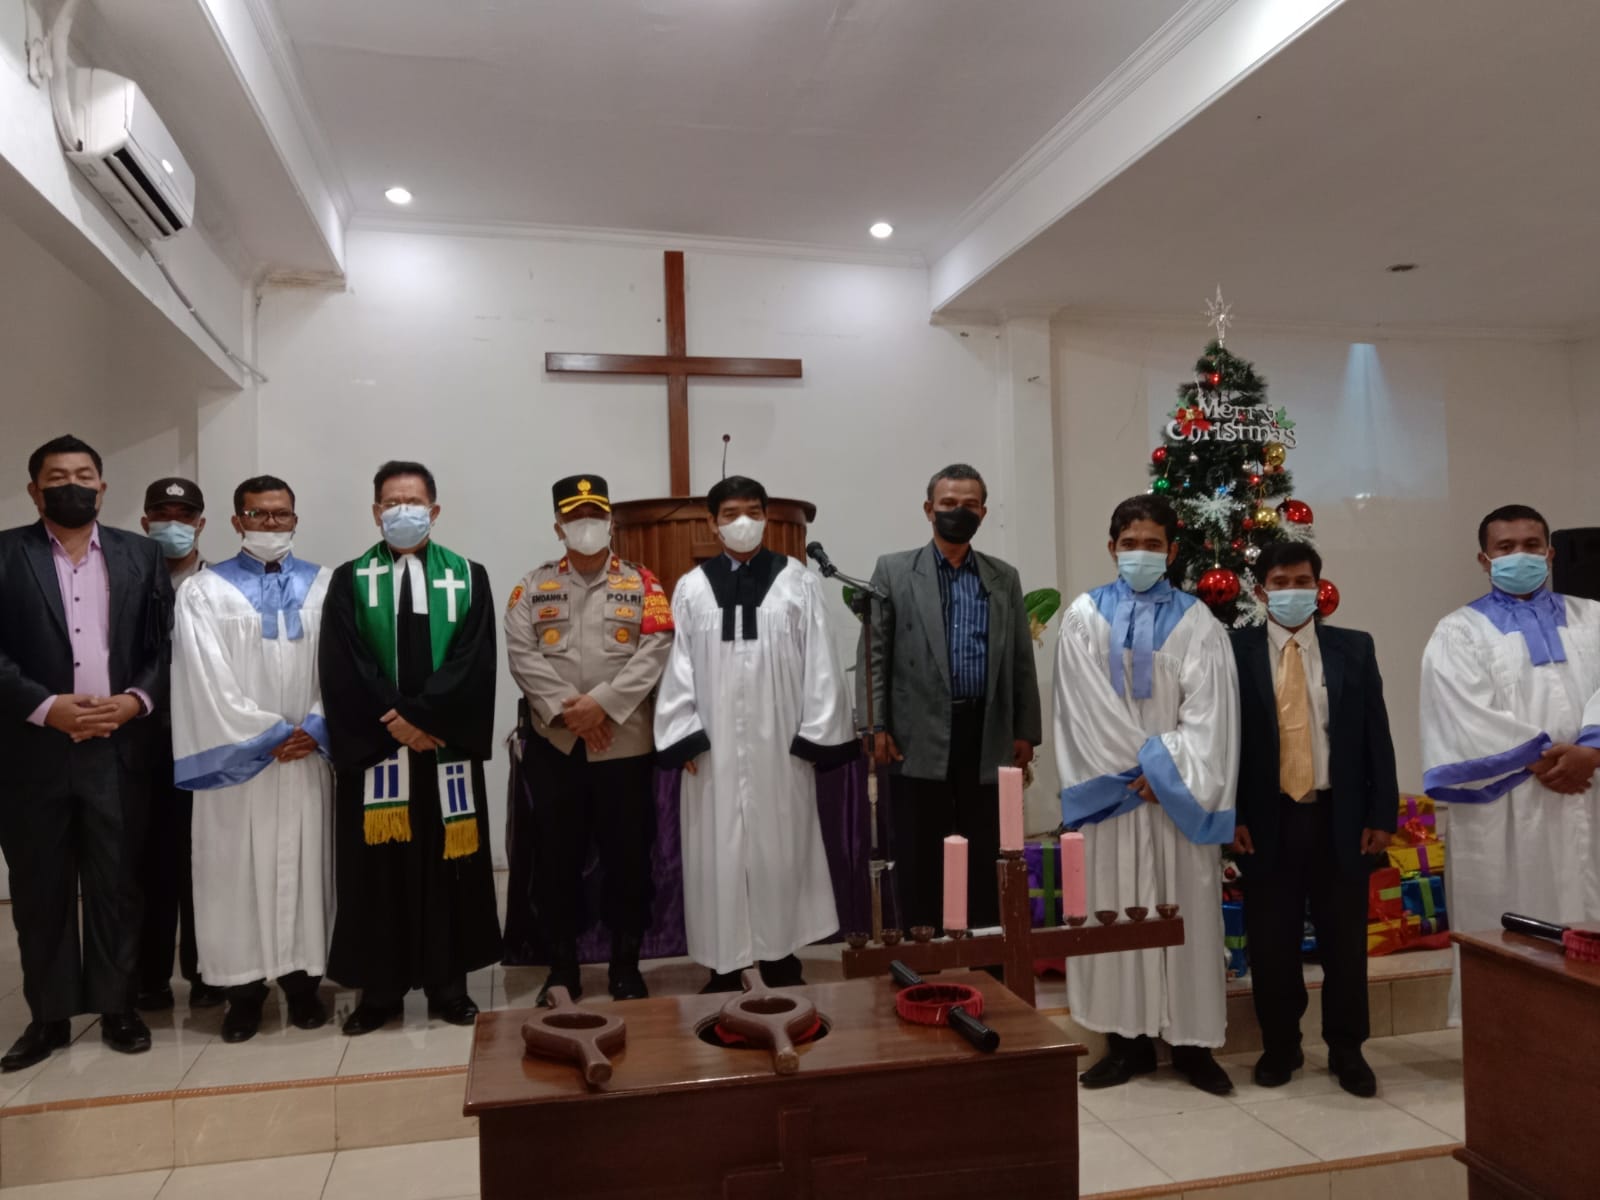 Aparat Polsek Benda, Kota Tangerang melakukan pengecekan ke sejumlah gereja di wilayah hukumnya untuk memastikan keamanan menjelang perayaan Natal 2021 dan Tahun Baru 2022.